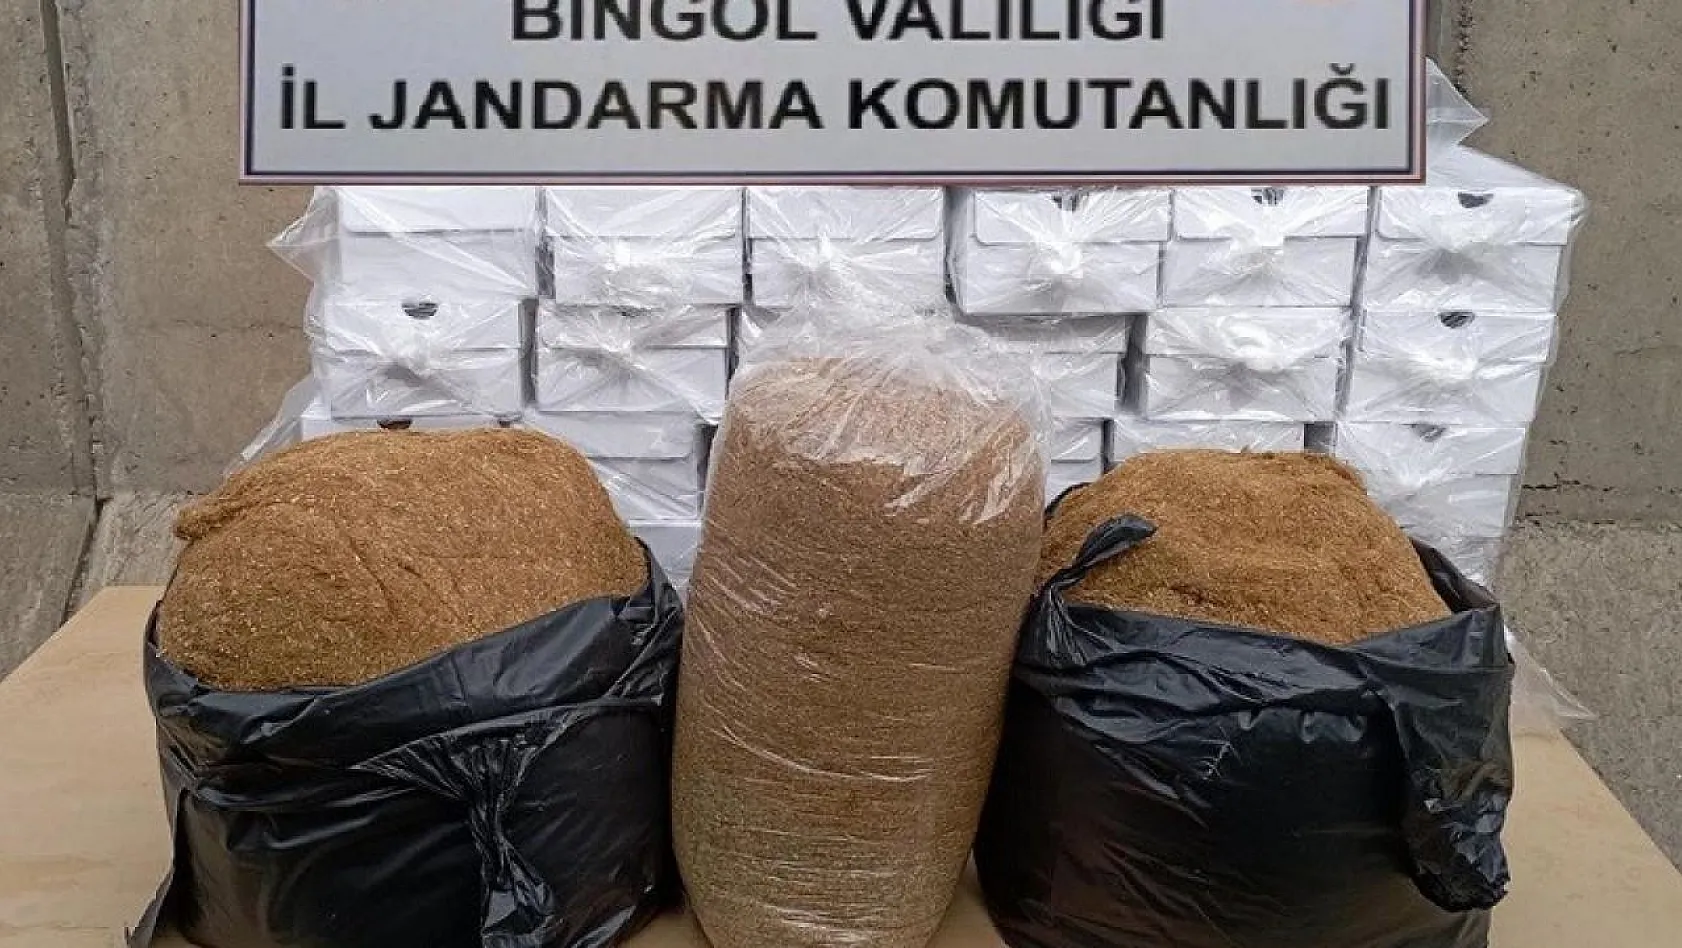 Bingöl'de 55 kilogram kaçak tütün ele geçirildi